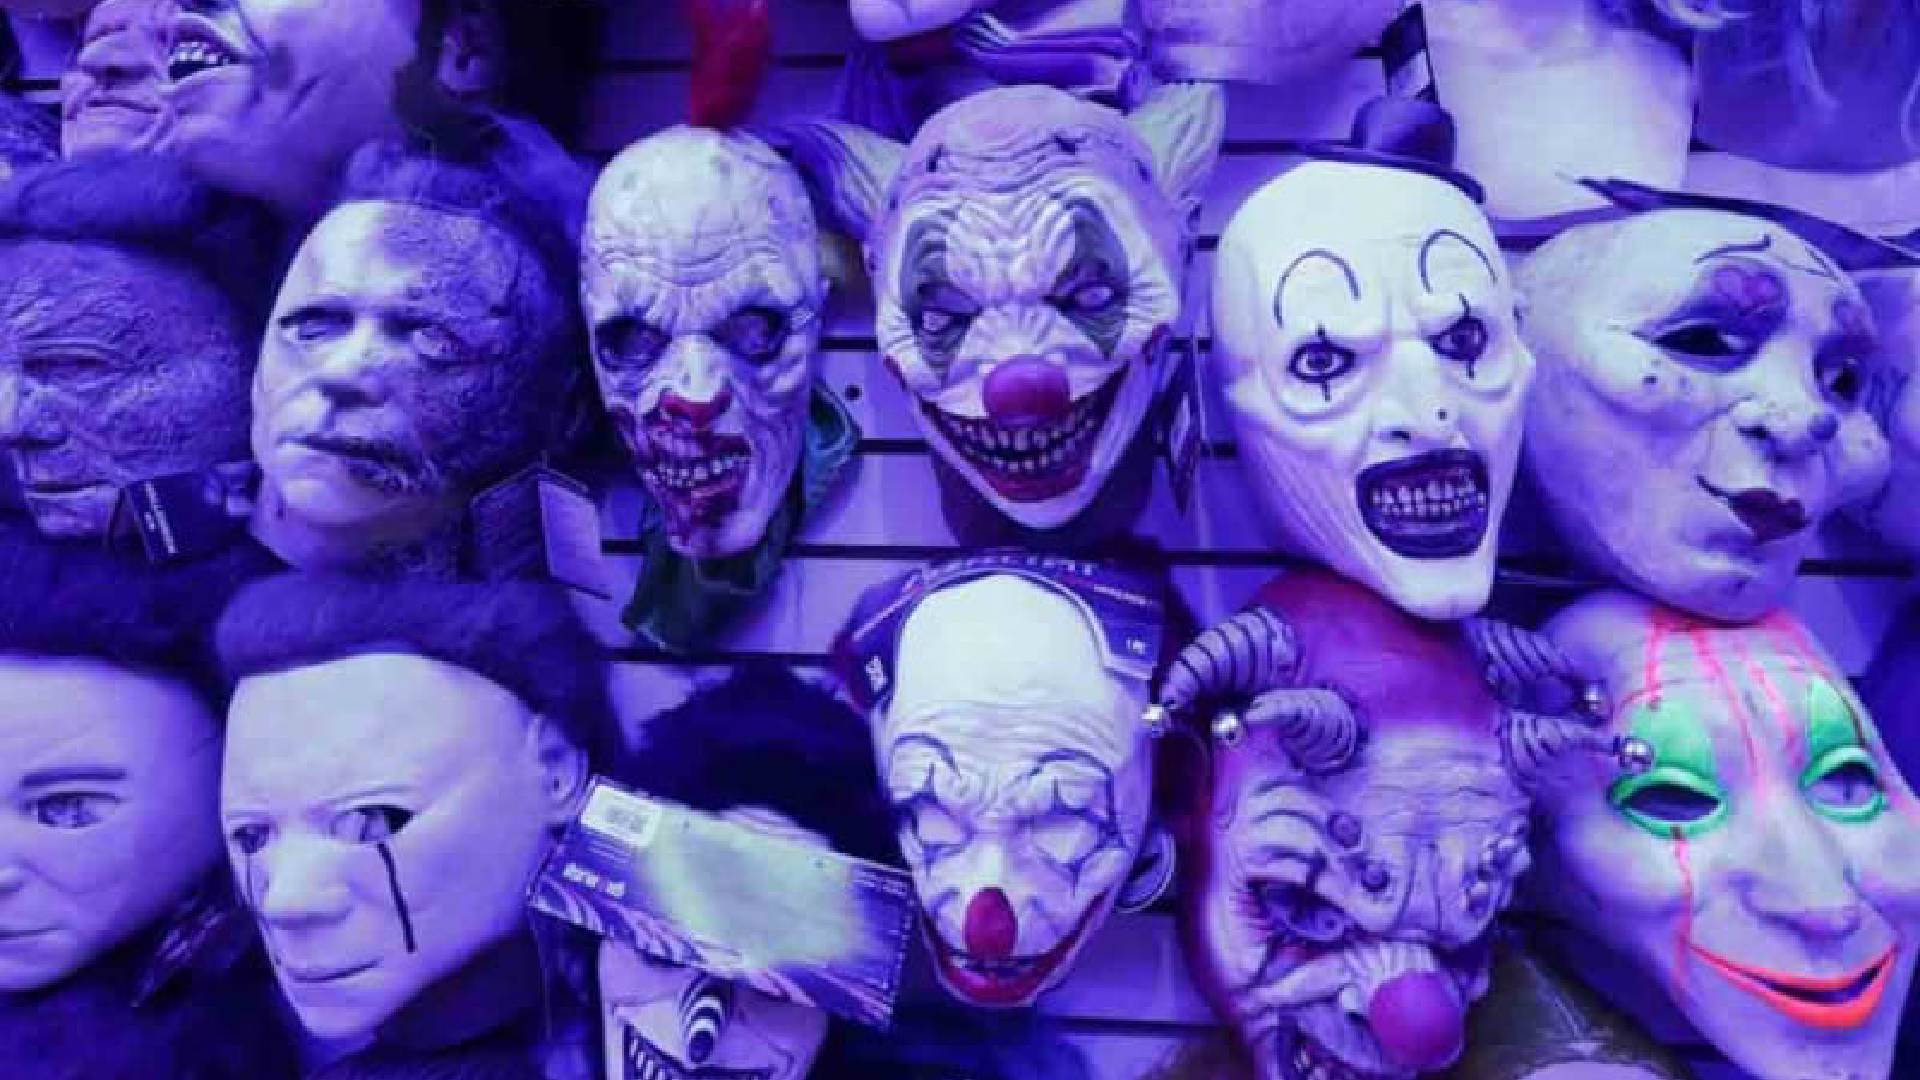 Grotesca decoración de Halloween en el Mercado de Sonora indigna a muchas personas